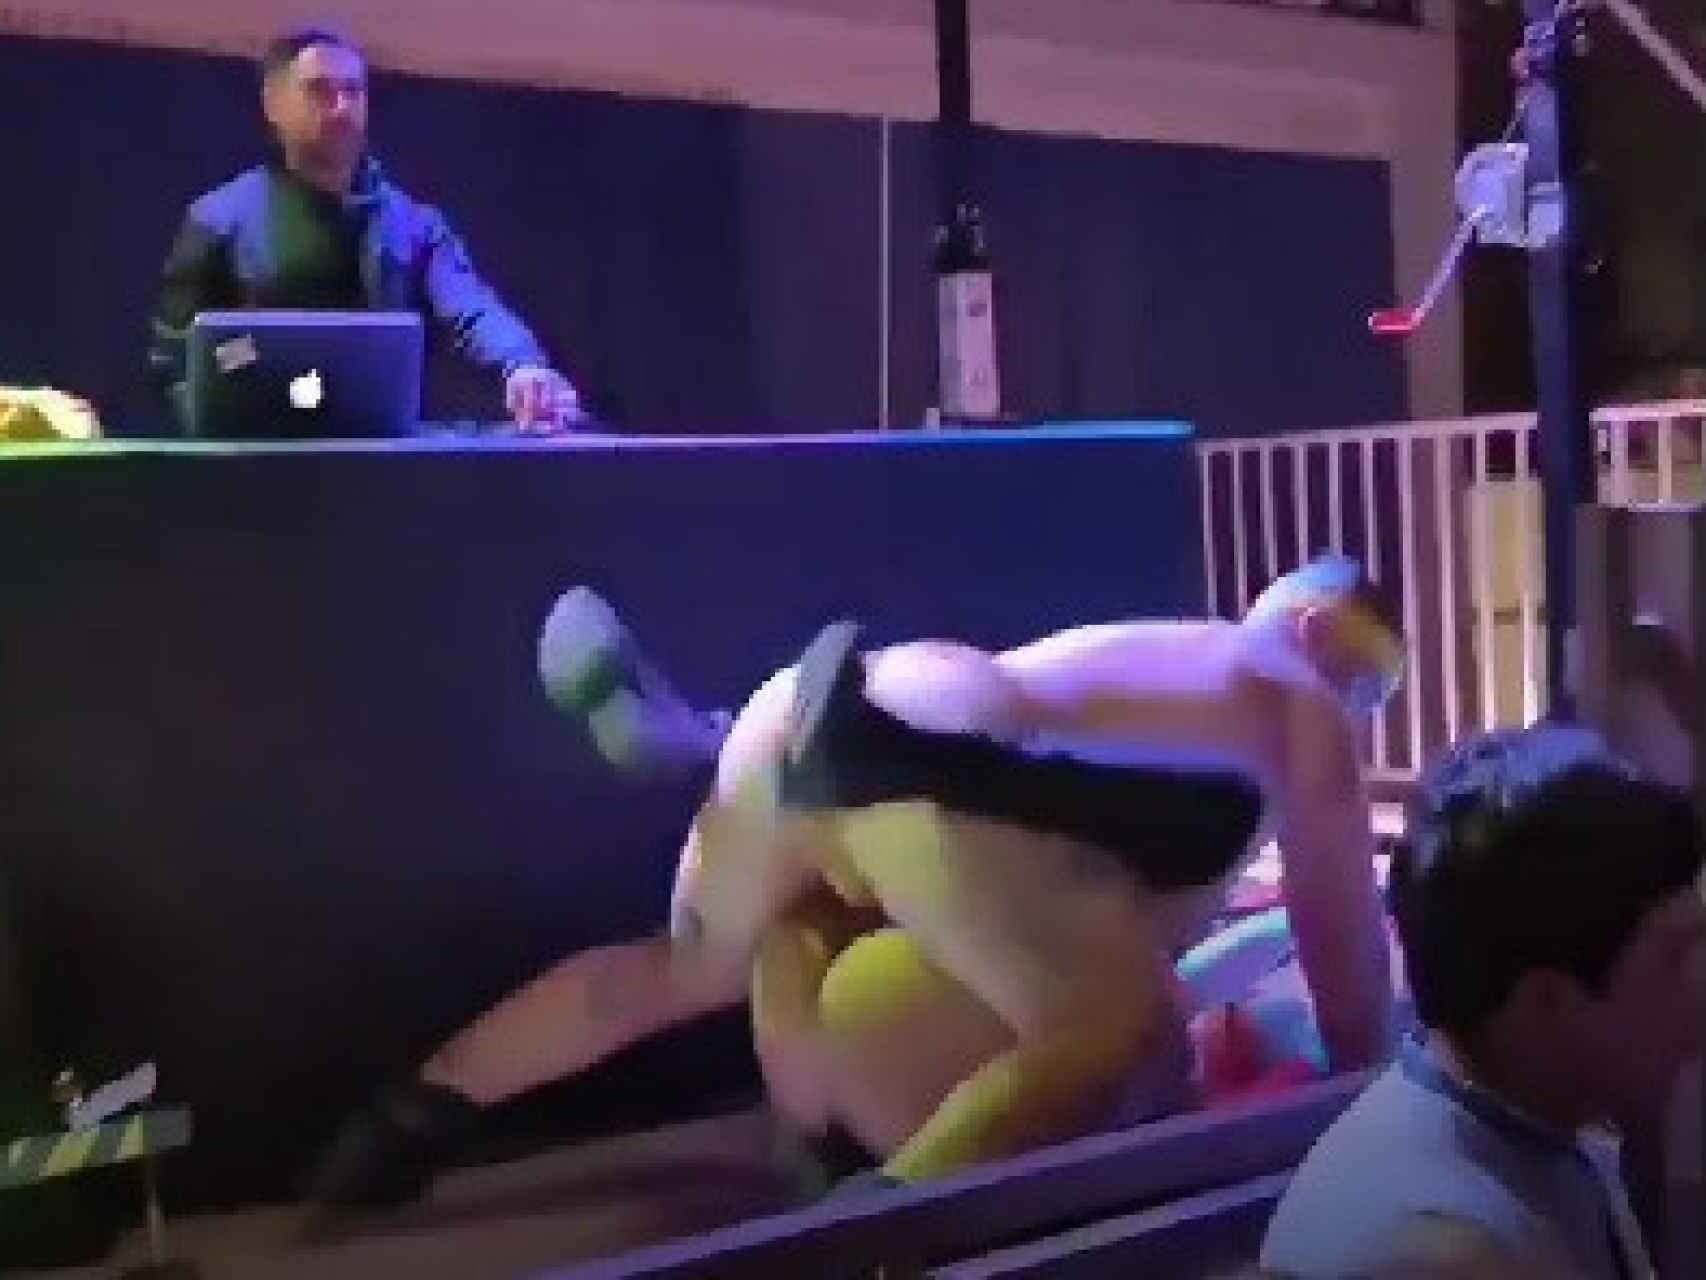 El DJ, impasible, sigue pinchando mientras los dos bailarines desarrollan semidesnudos su espectáculo.